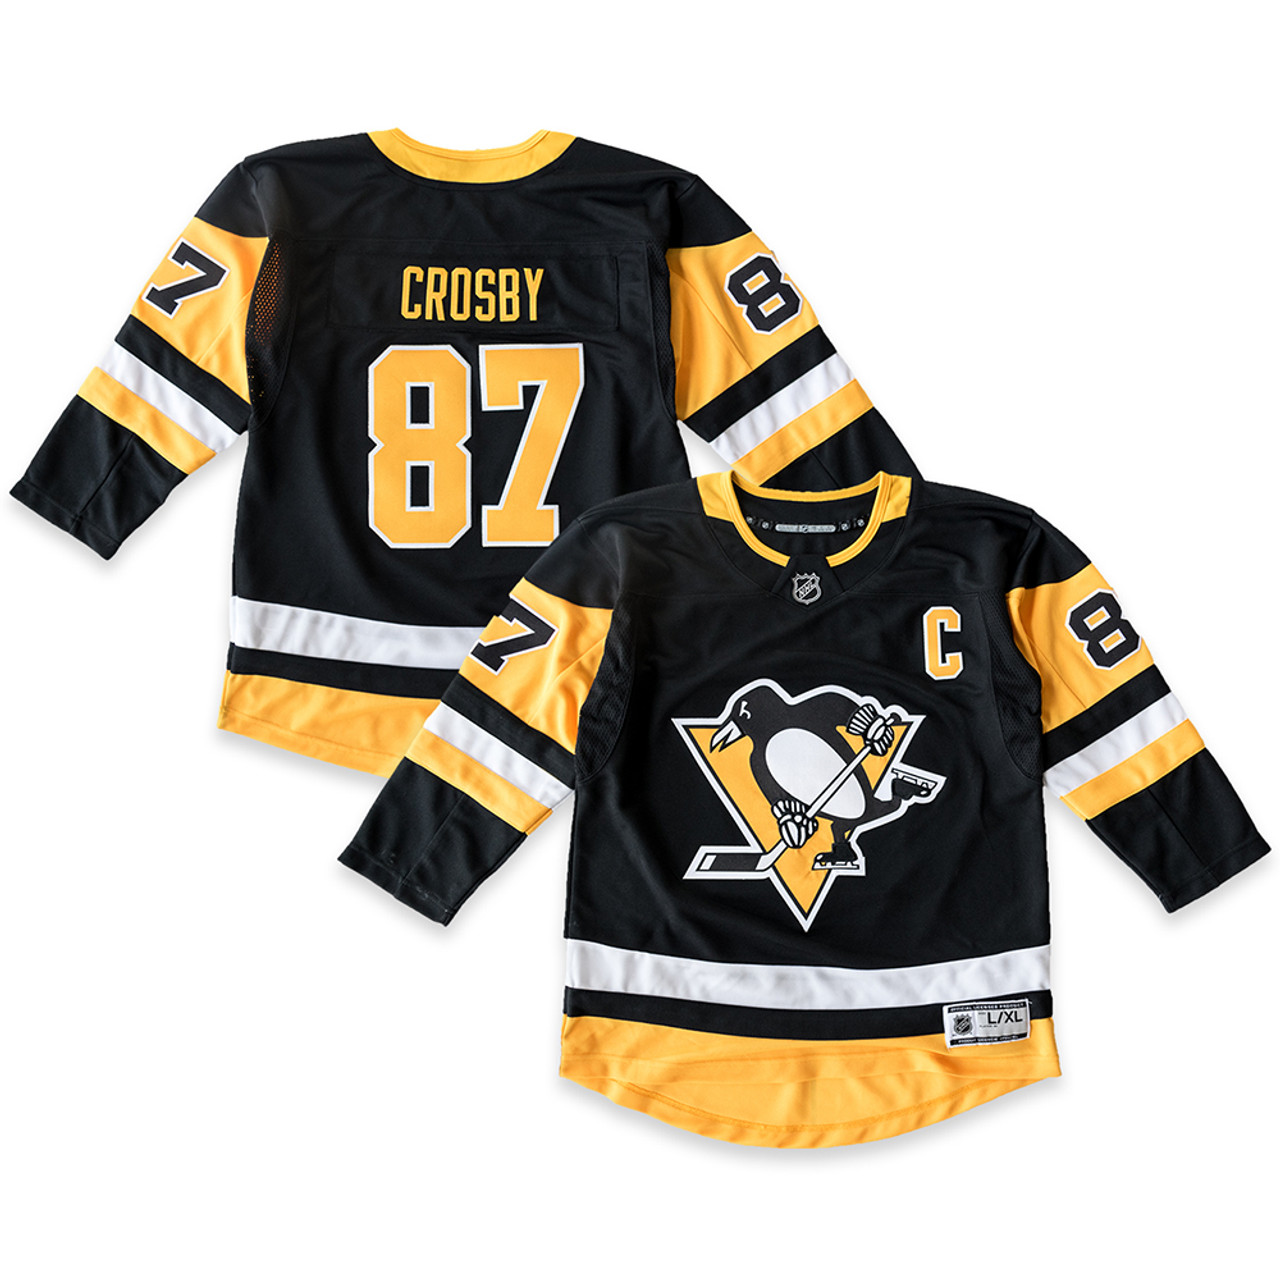 Pittsburgh Penguins Ladies Alternate Crosby Jersey